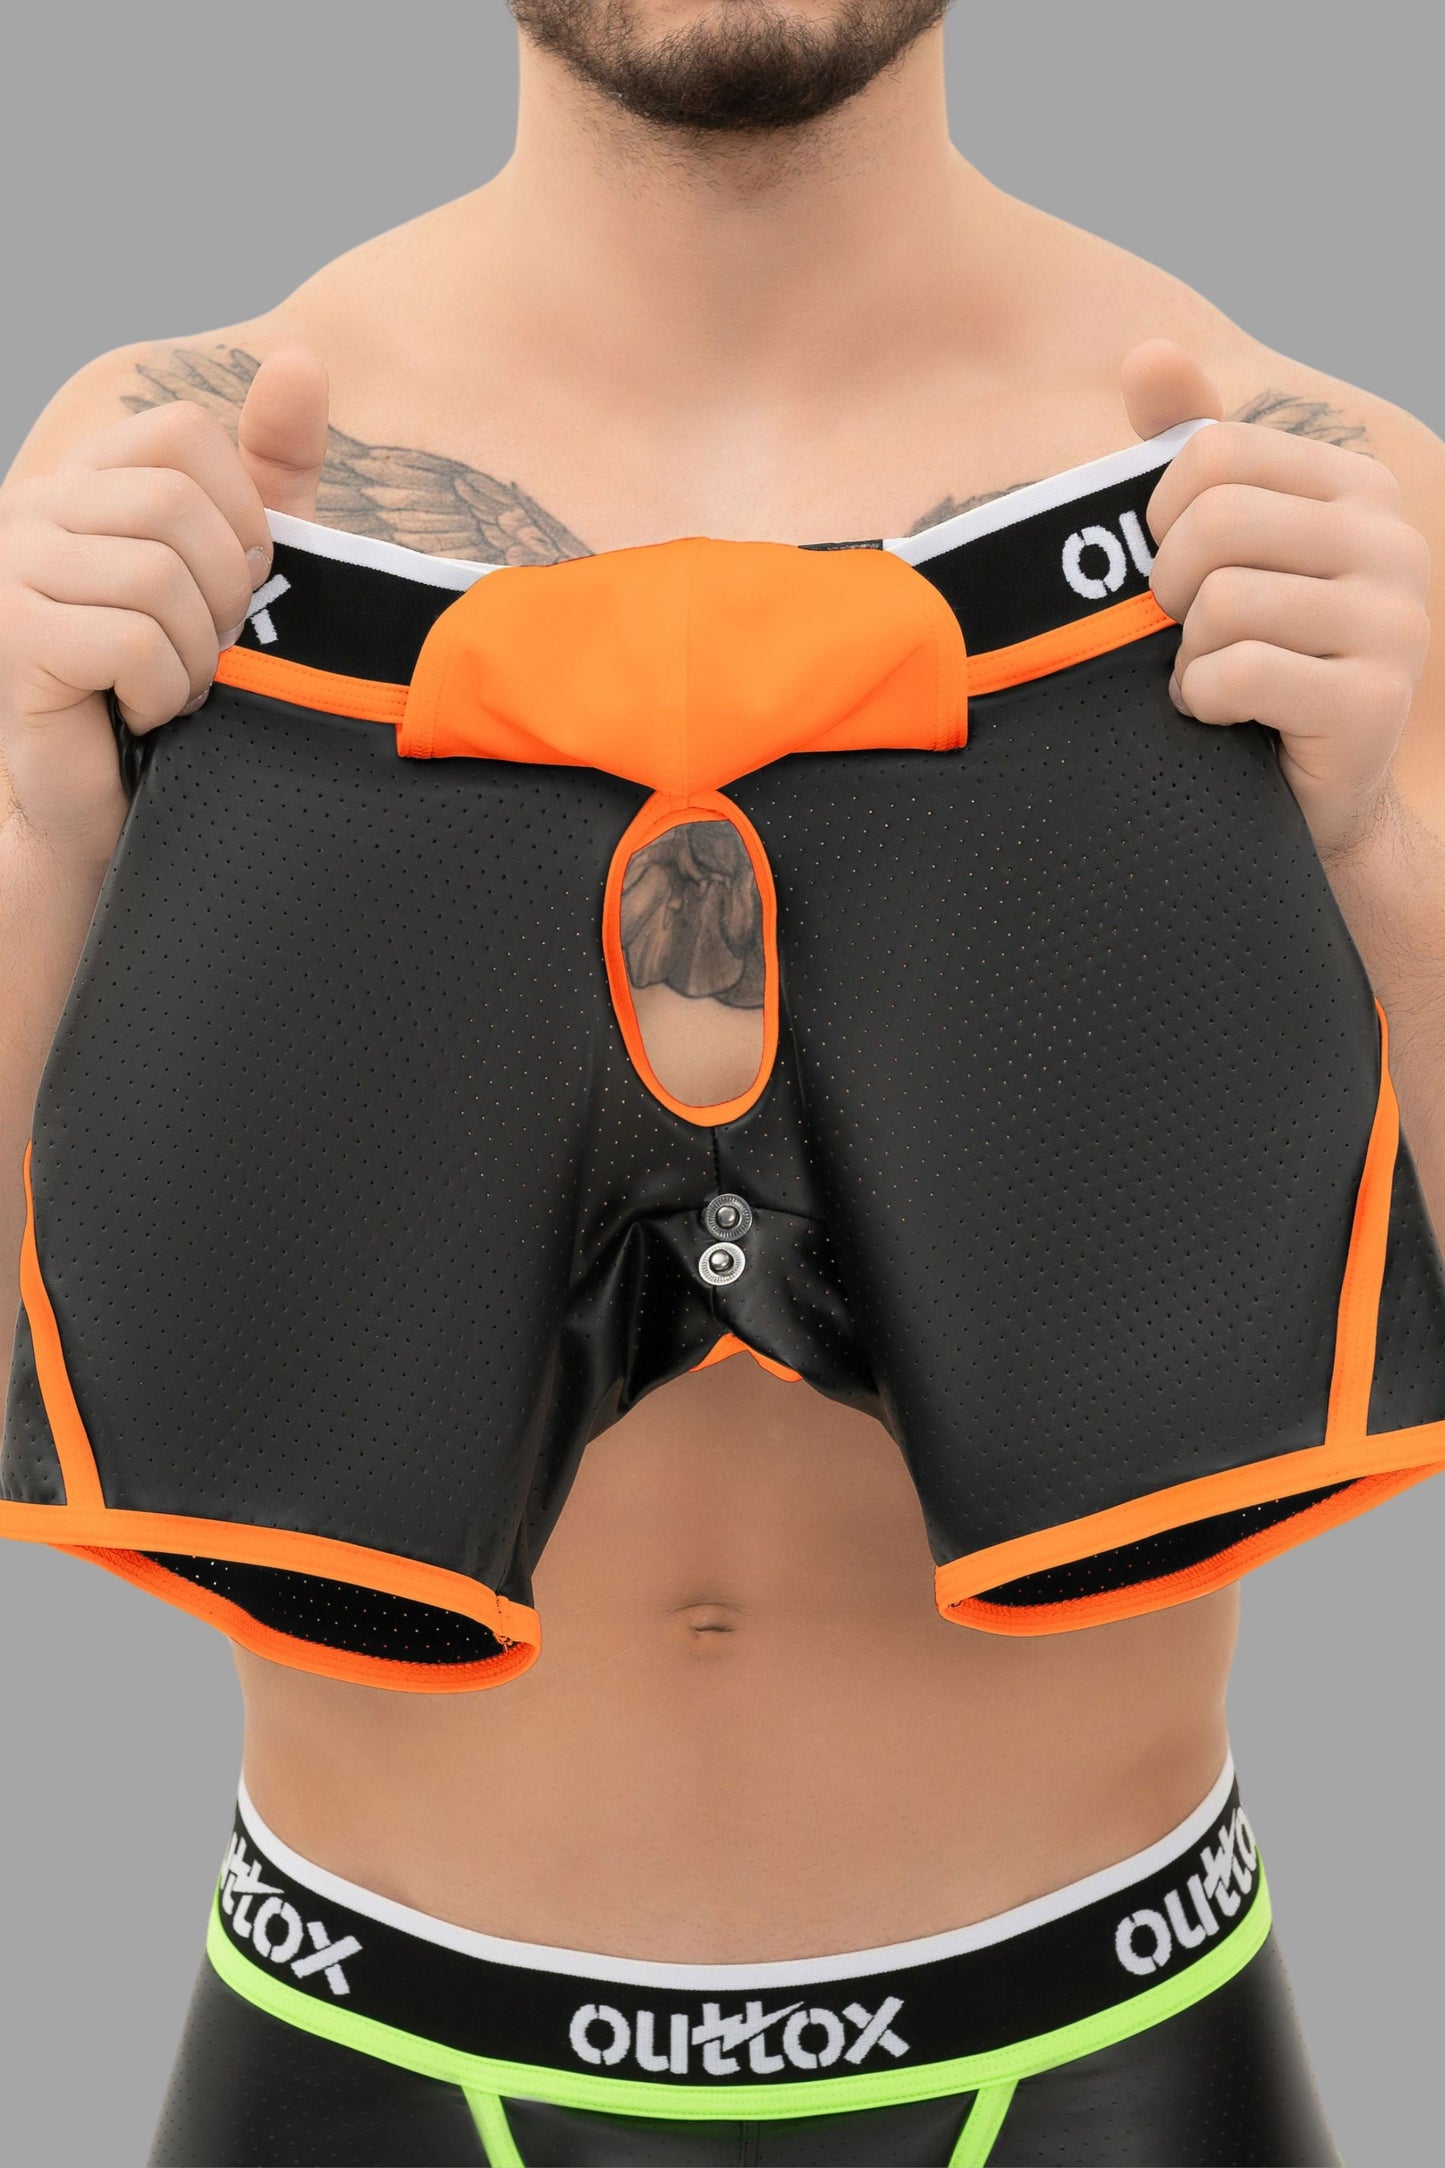 Outtox. Offene hintere Shorts mit Snap Codpiece. Schwarz+Orange